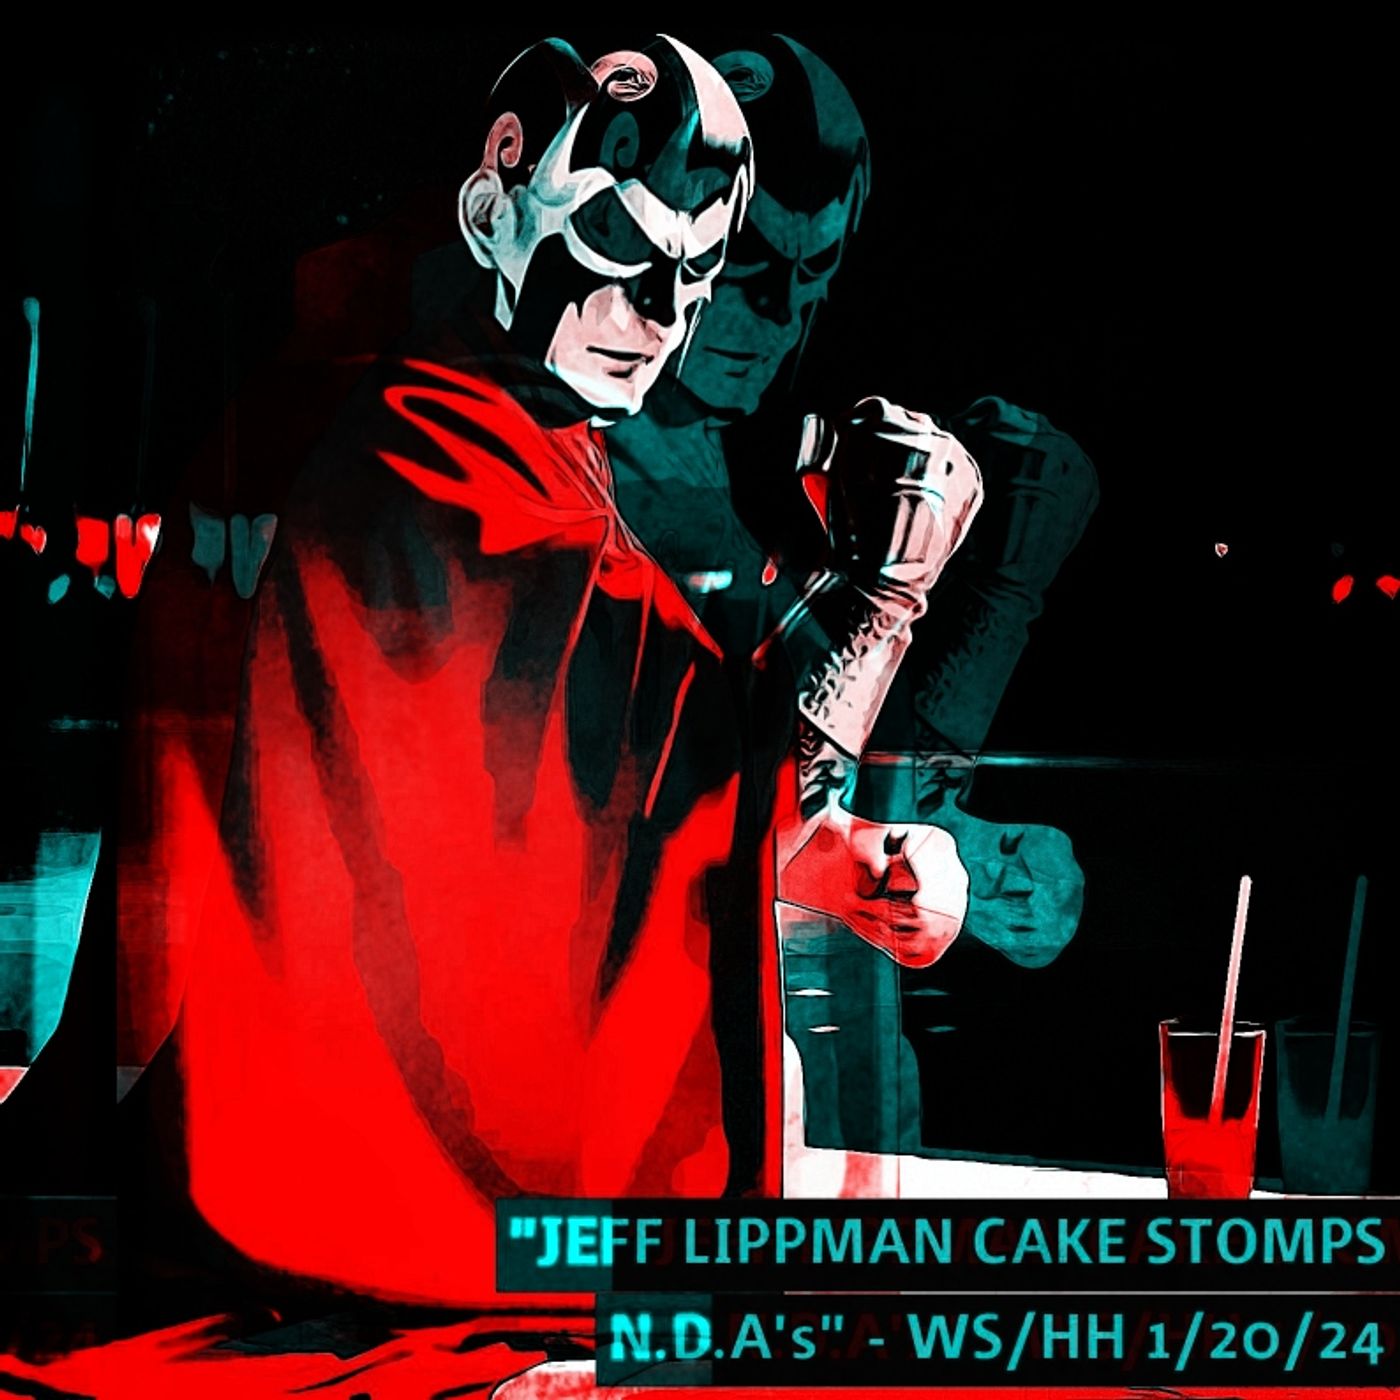 JEFF LIPPMAN CAKE STOMPS N.D.A's